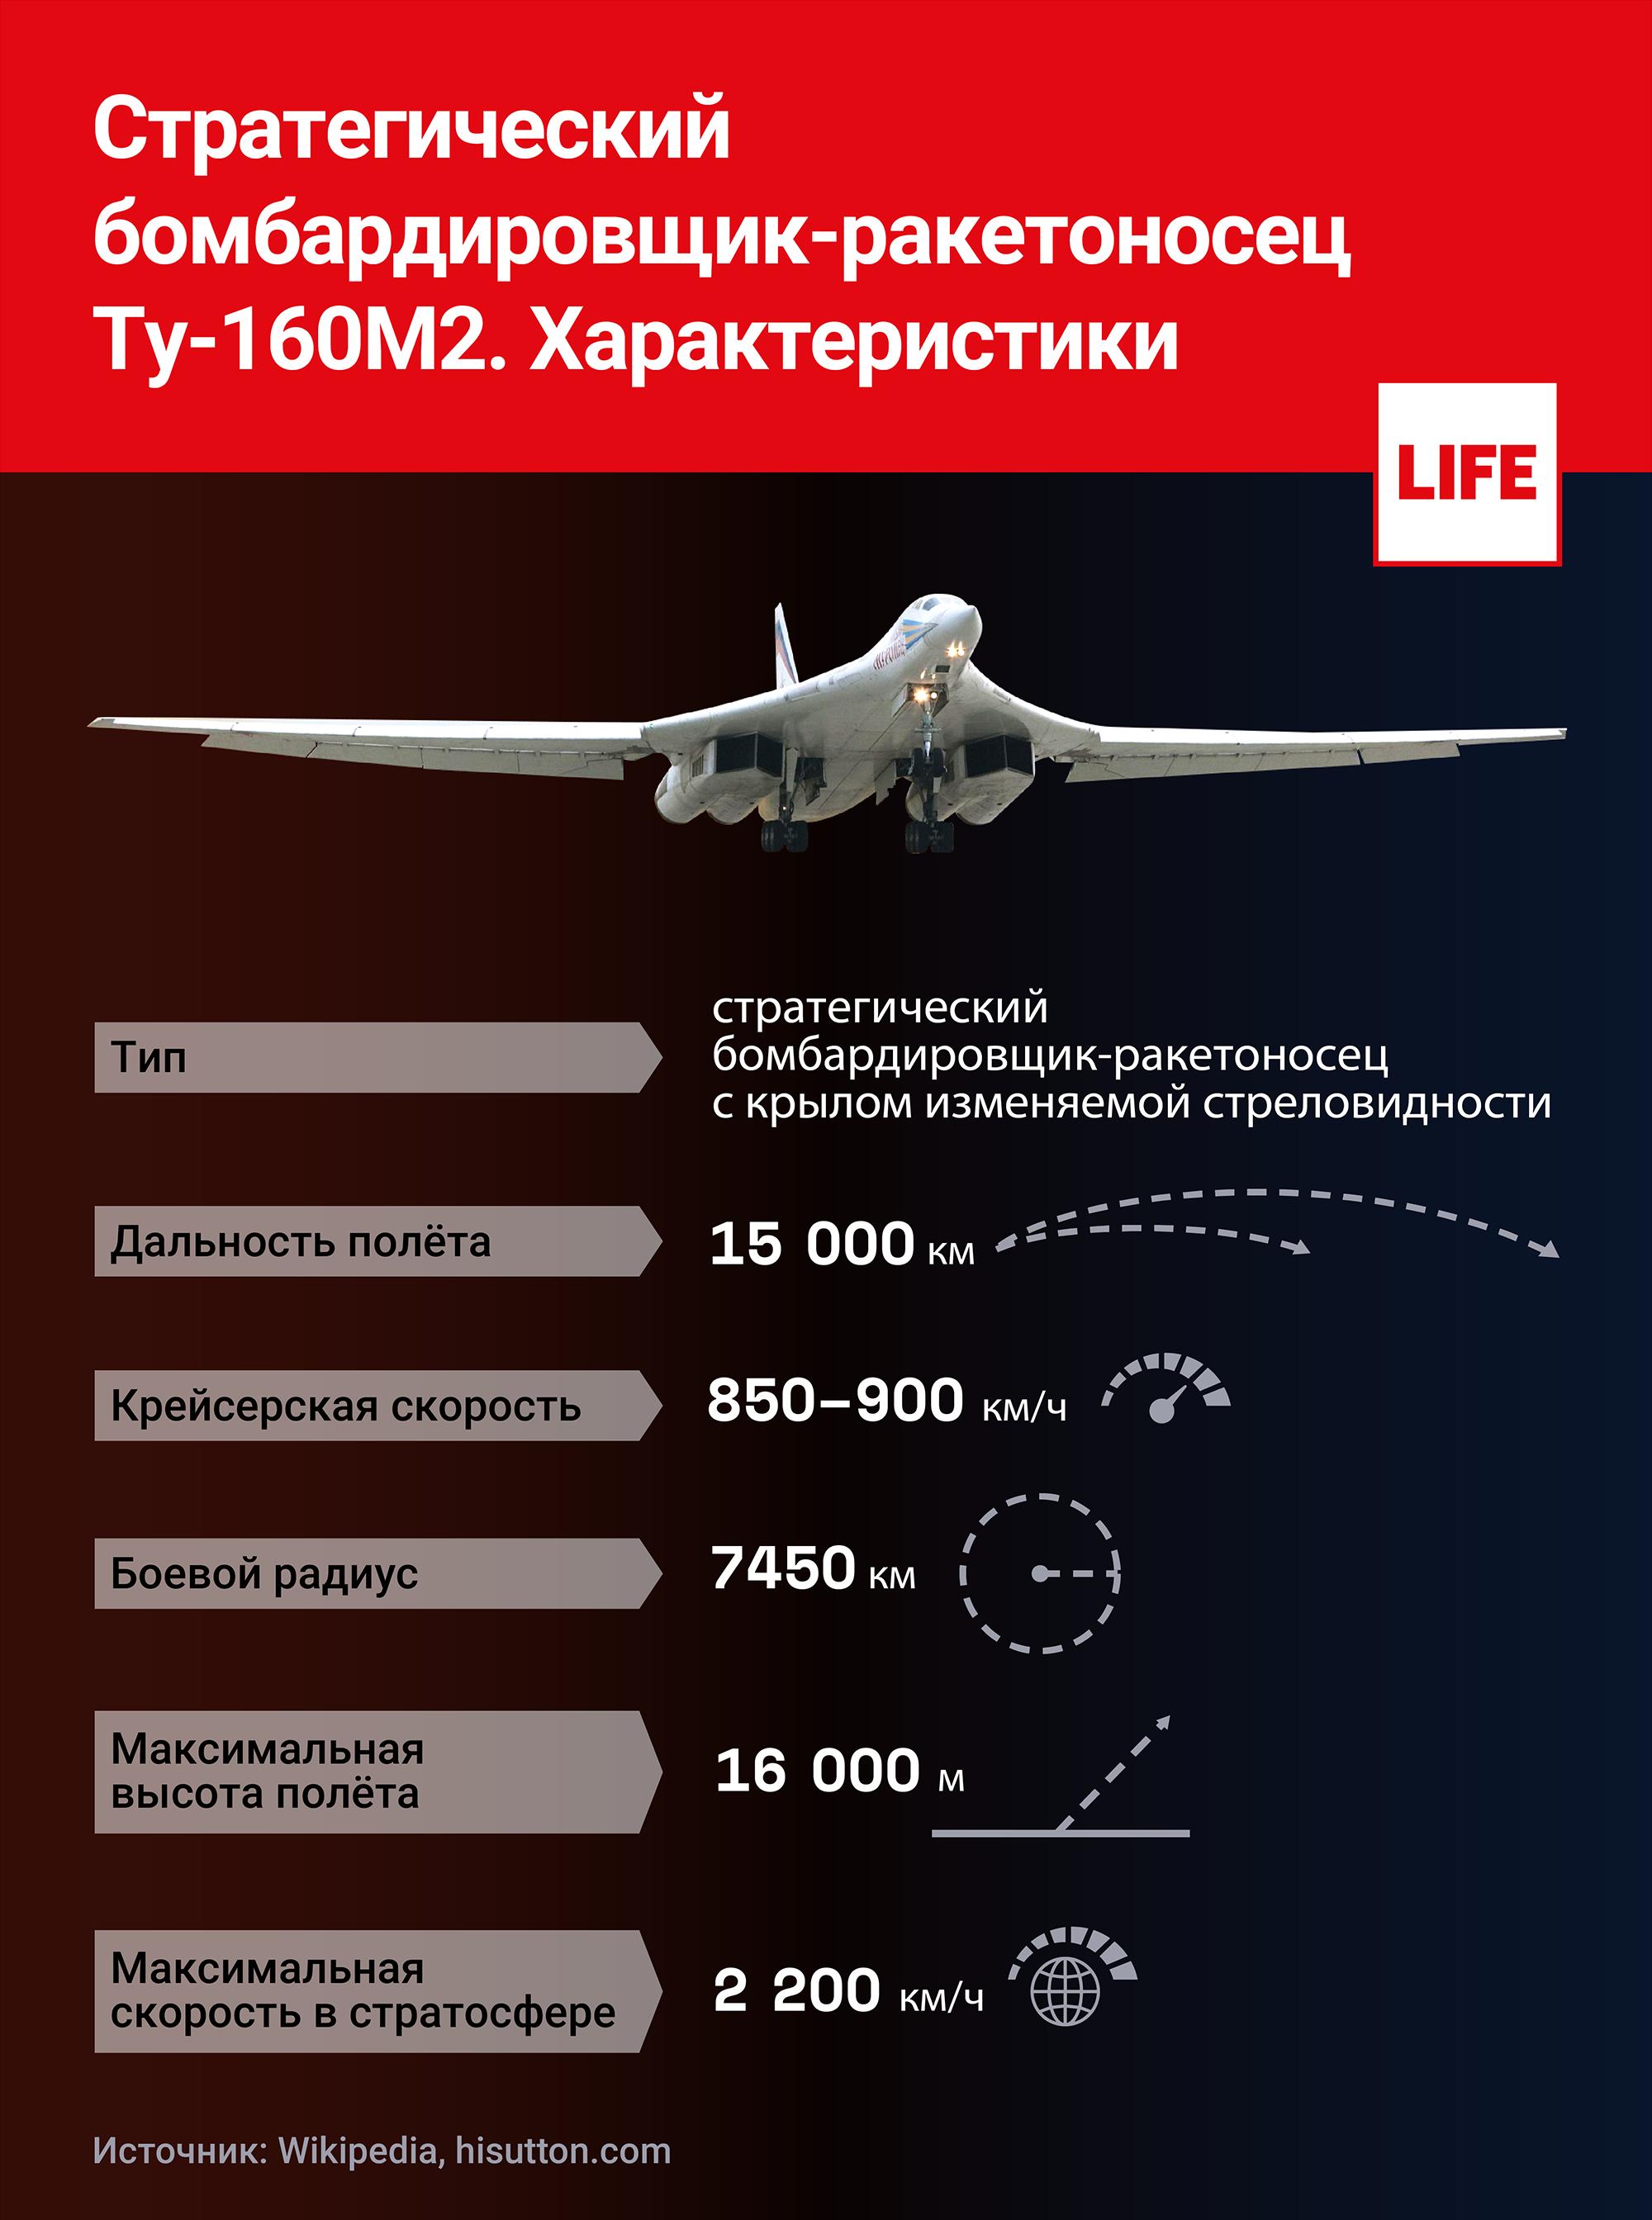 Ту 160 сверхзвуковой характеристики. Ту-160м. Белый лебедь бомбардировщик ту-160 характеристики. Максимальная скорость ту-160 белый лебедь. ТТХ ту 160м2 белый лебедь.